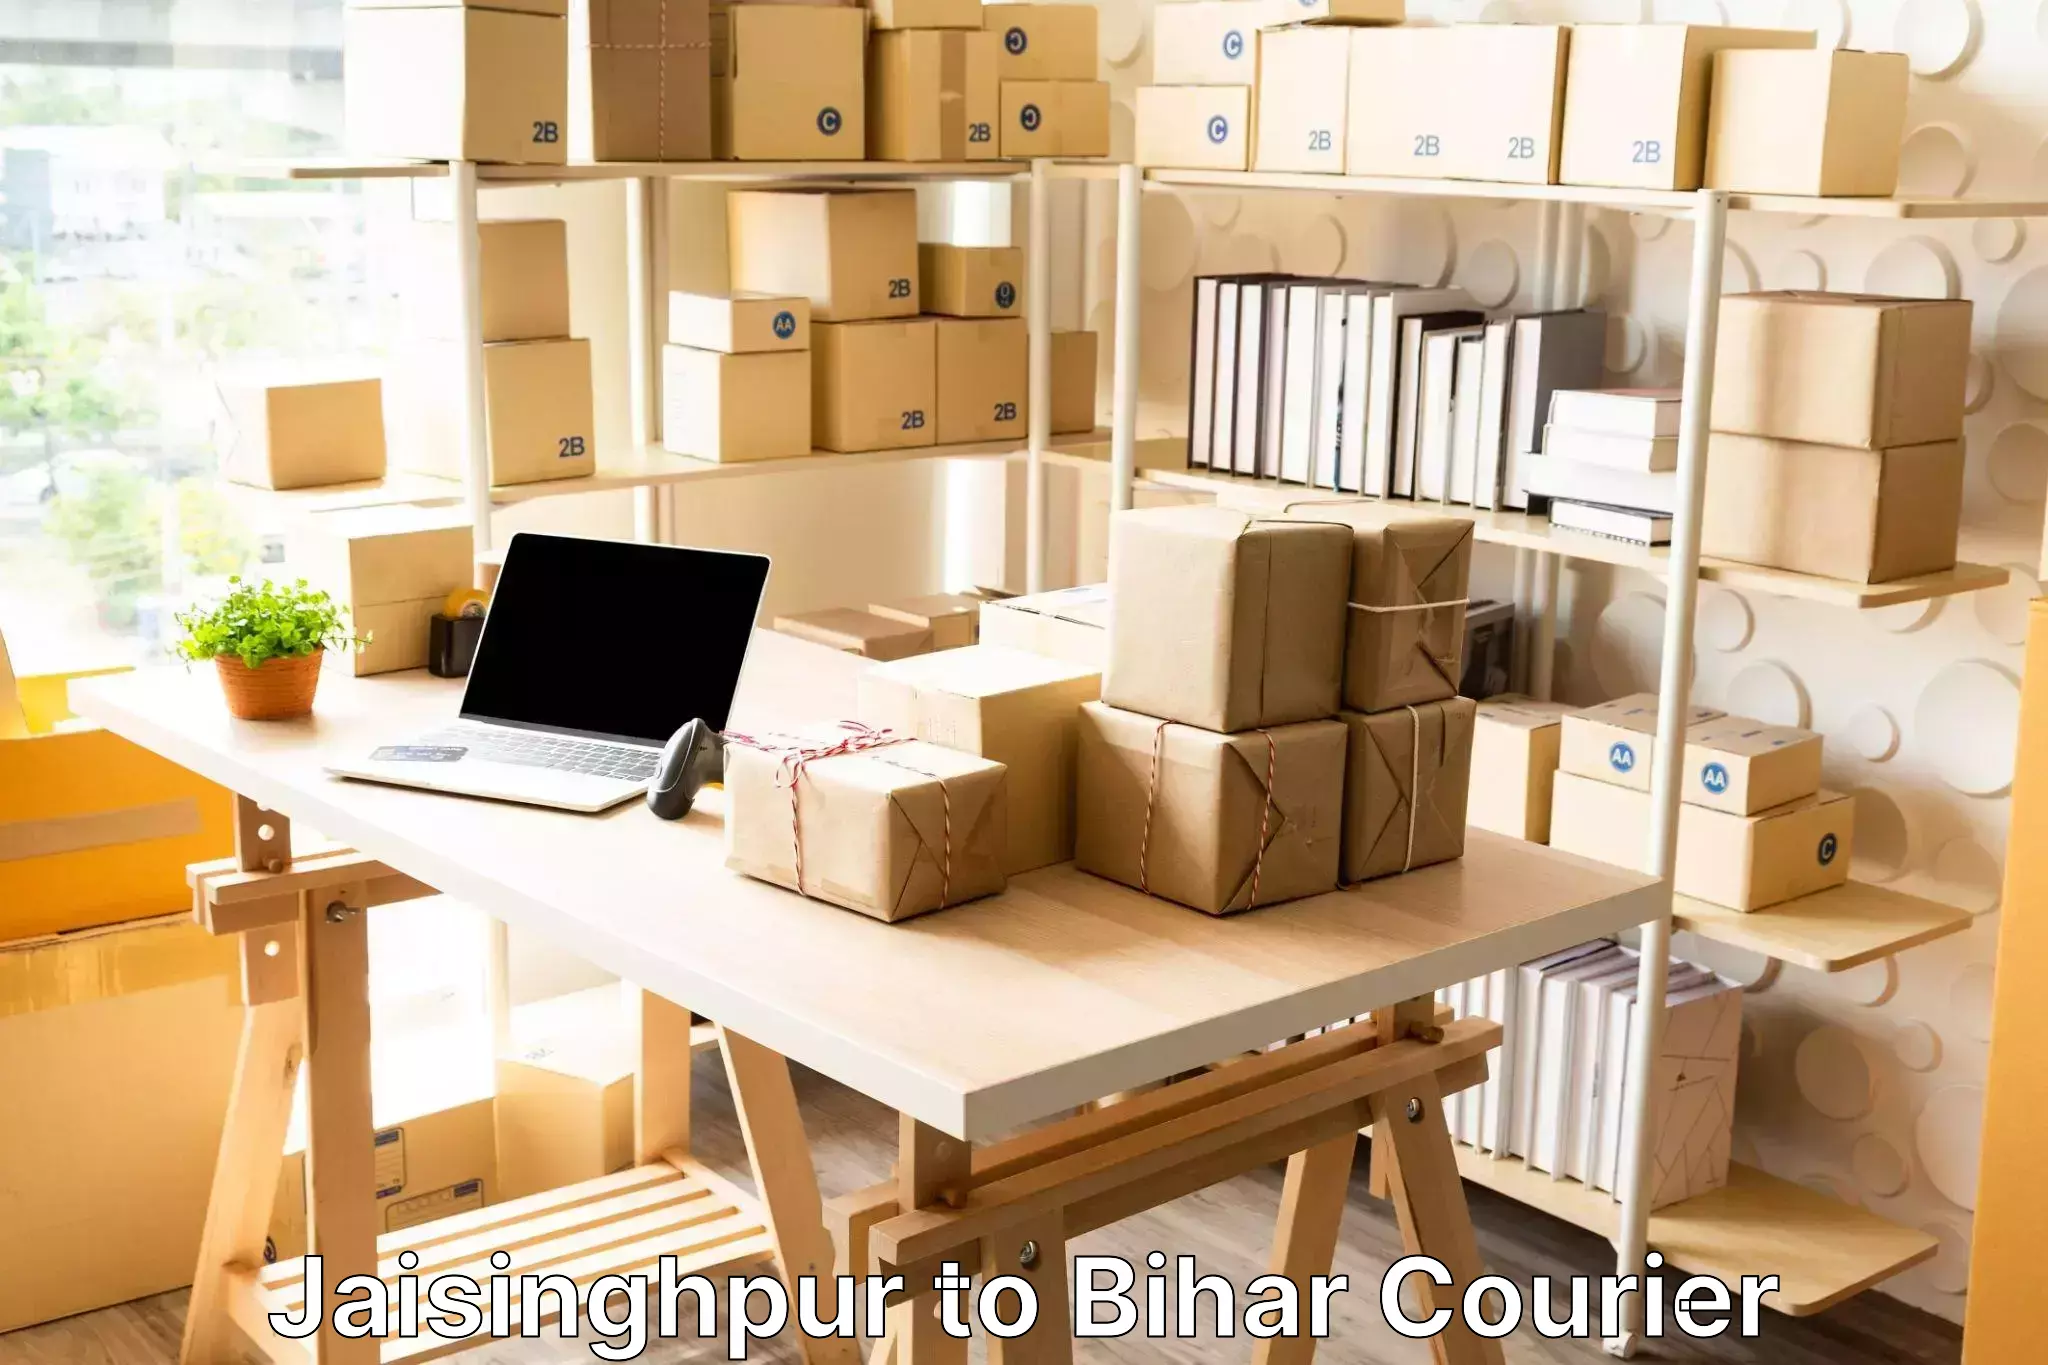 Luggage transport consultancy Jaisinghpur to Bihar